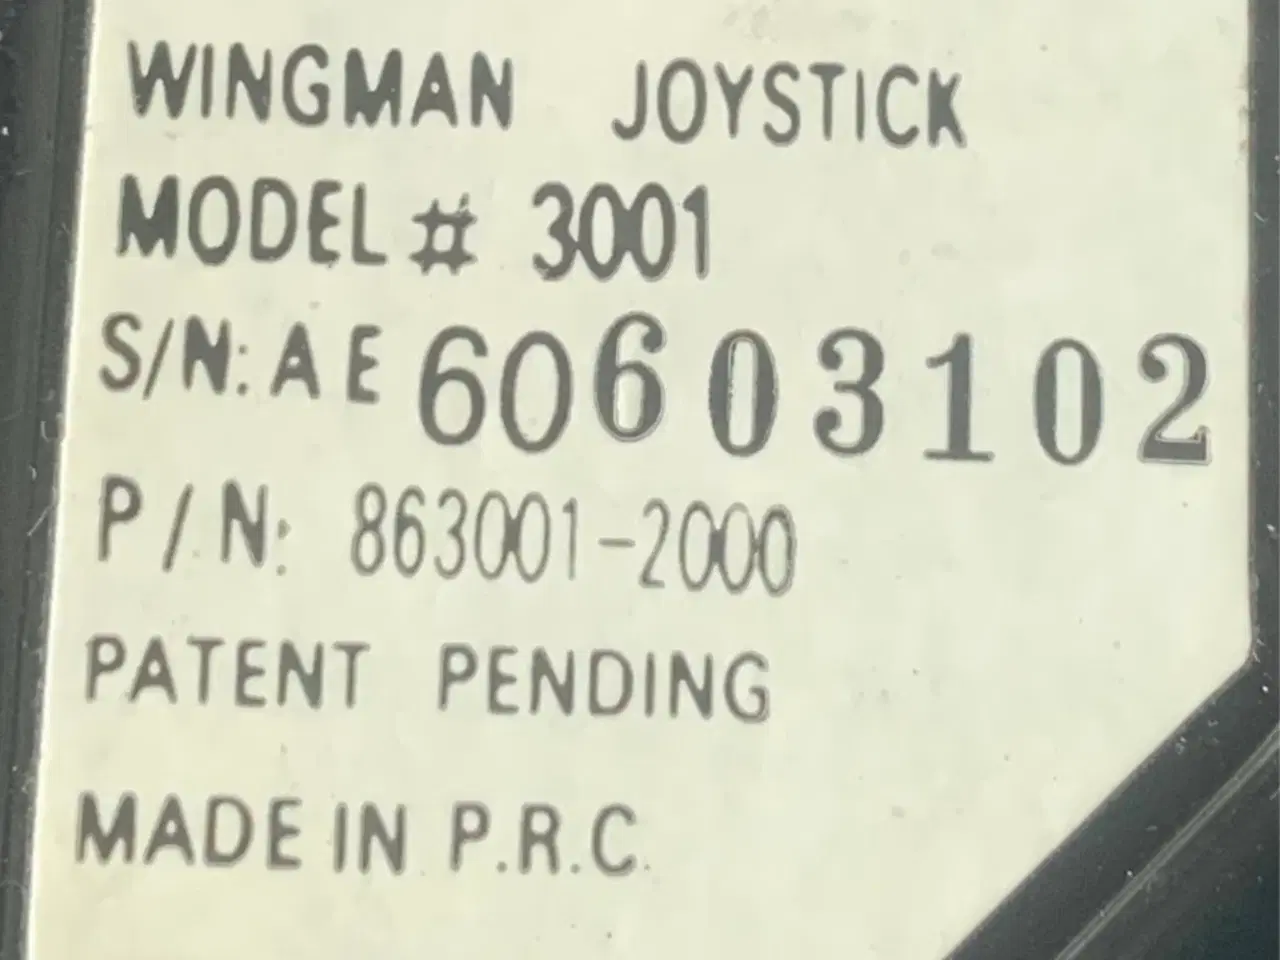 Billede 4 - Logitech Wingman Joystick Model 3001